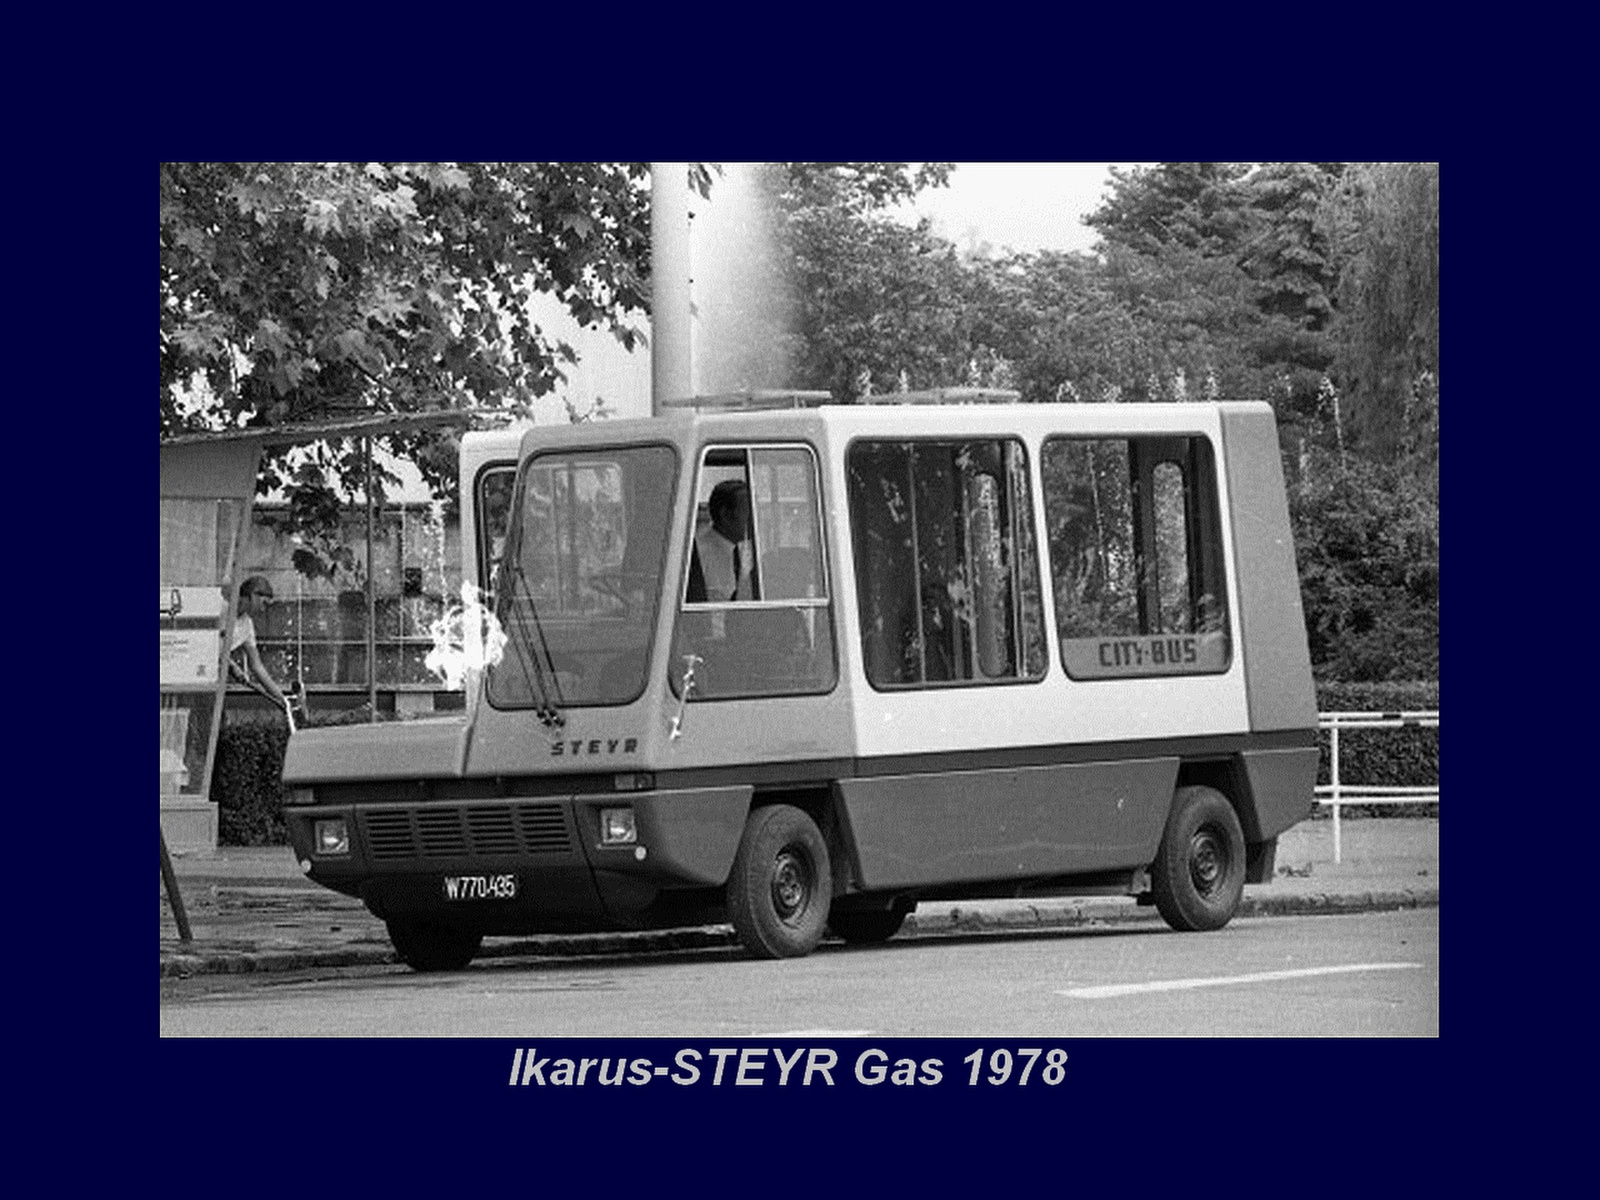 Magyar Busz - Ikarus-Steyr Gas Mini